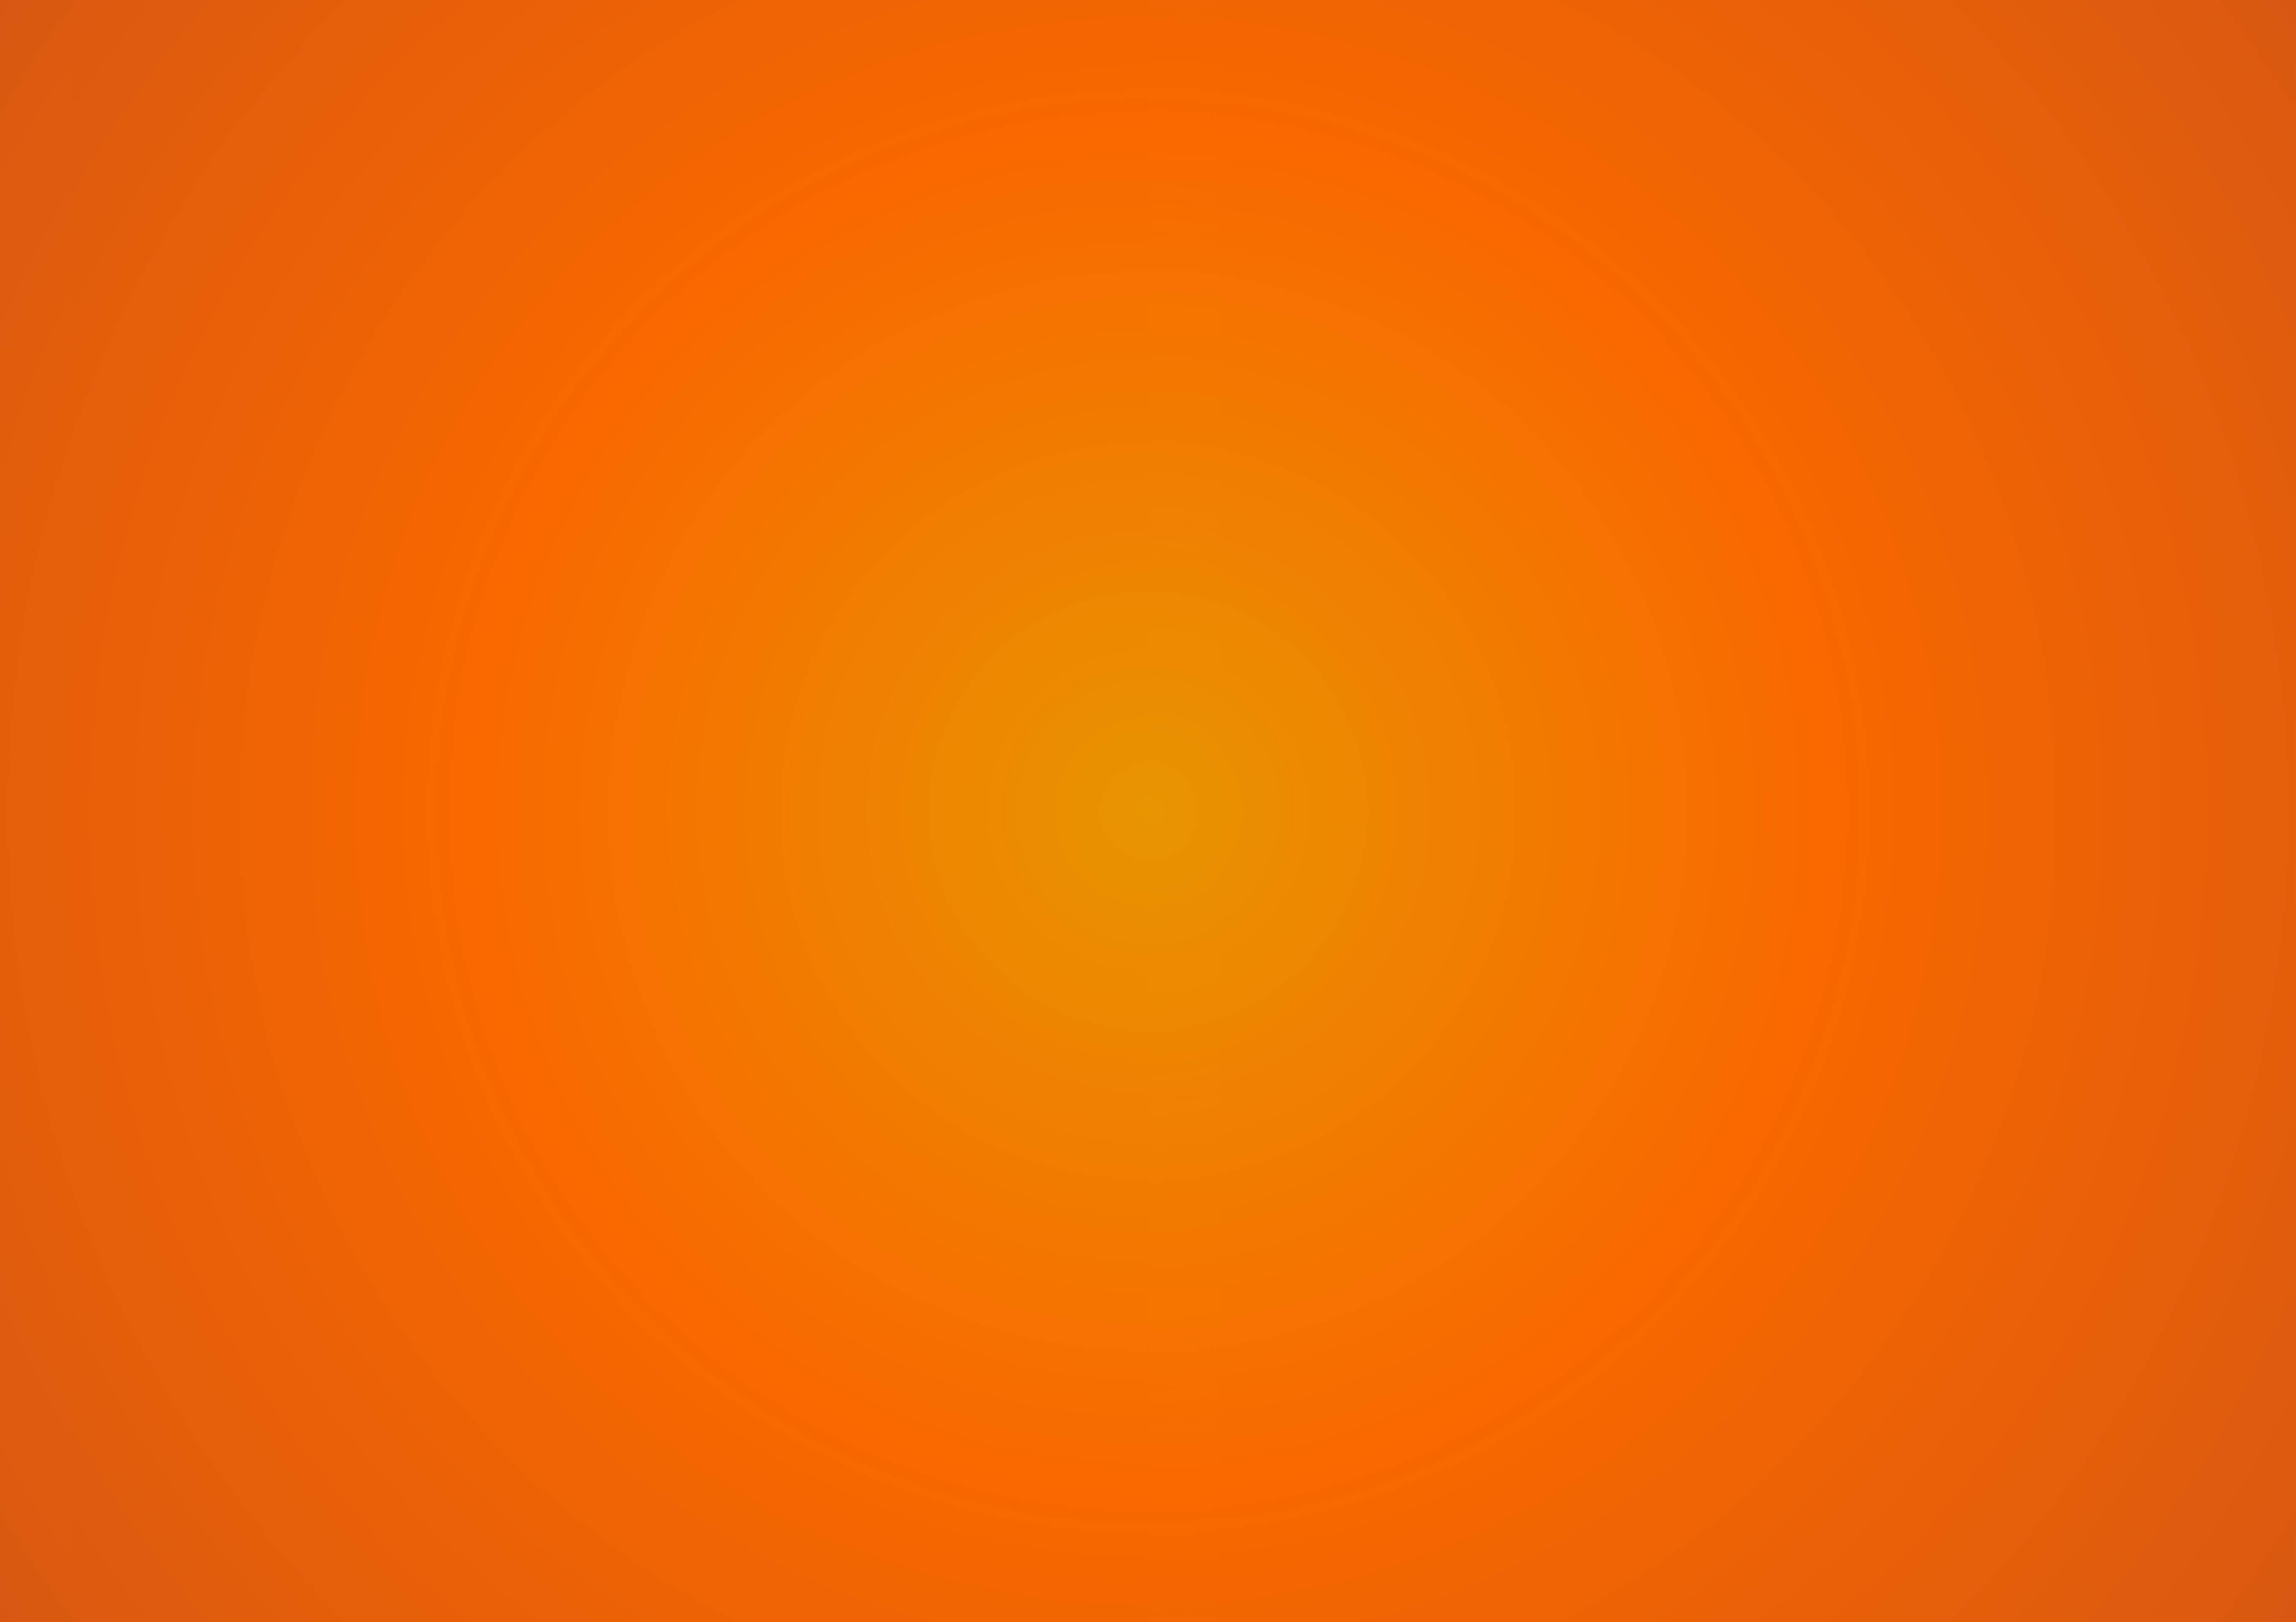 Hãy chiêm ngưỡng hình ảnh nền cam-gradient đầy tươi sáng và độc đáo này! Sắc cam đậm dần thành màu sáng hơn tạo nên một phong cách riêng biệt và thu hút. Những đường nét chuyển tiếp nhẹ nhàng và tinh tế sẽ khiến bạn cảm thấy thư thái và đầy năng lượng.